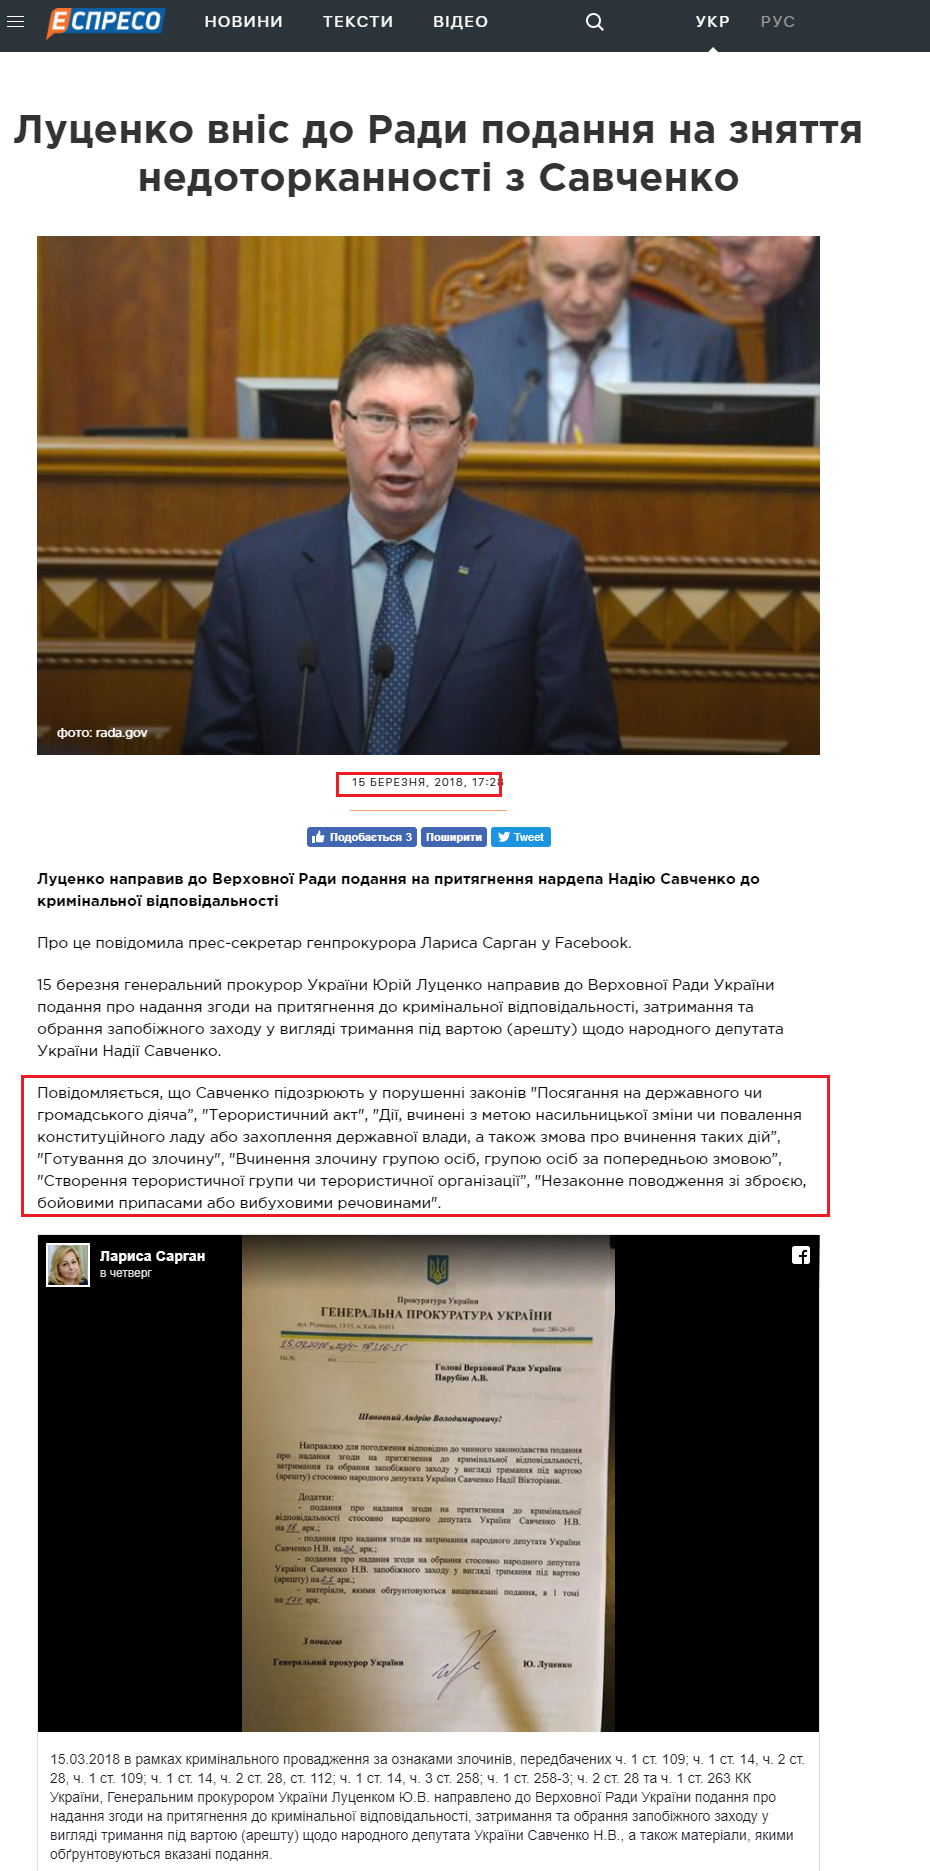 https://espreso.tv/news/2018/03/15/lucenko_vnis_do_rady_podannya_na_znyattya_nedotorkannosti_z_savchenko